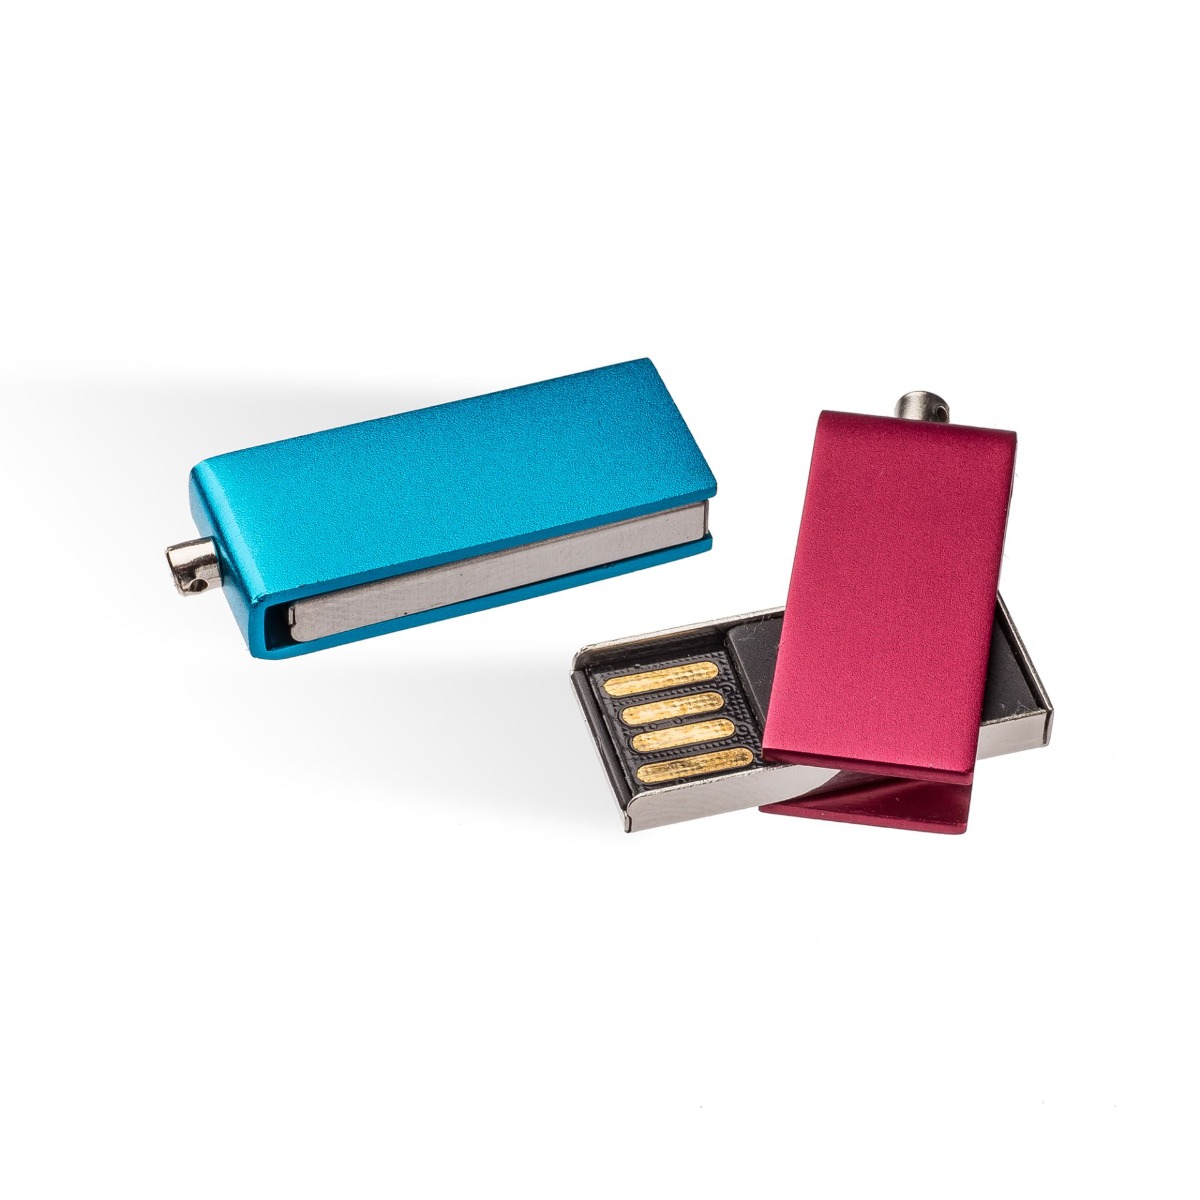 USB-Stick Tarty 3.0 in verschiedenen Farben